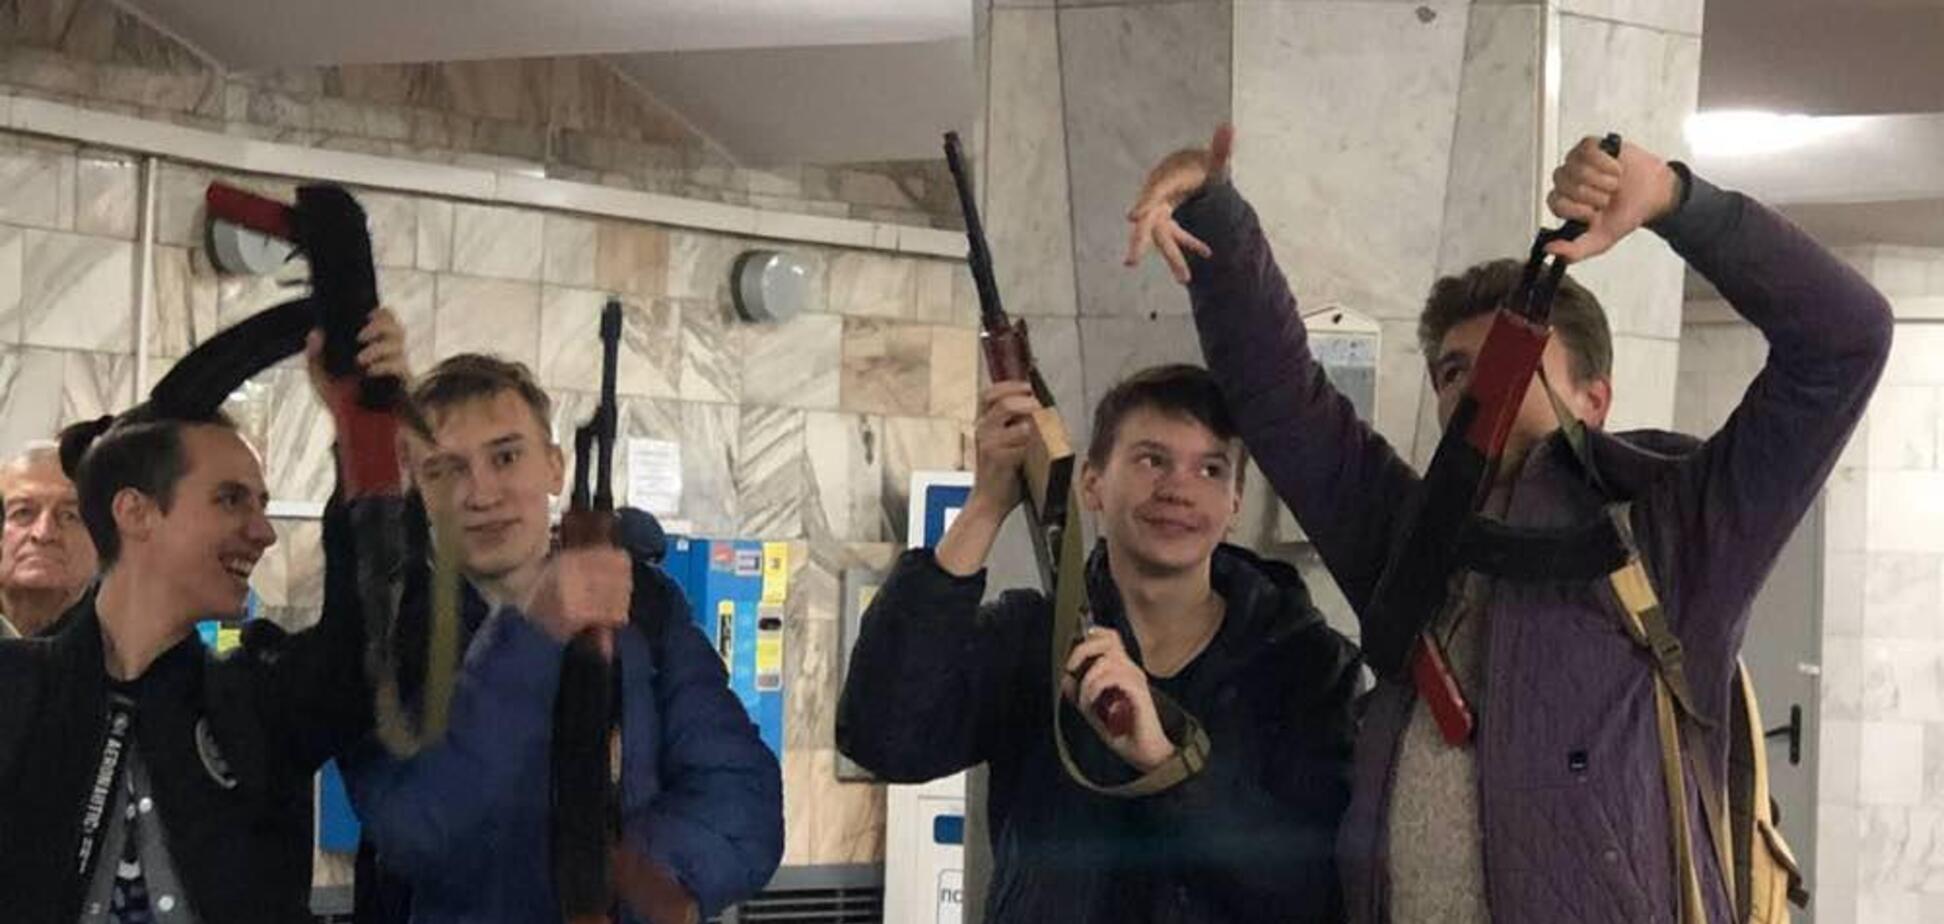 ''Автомати замотали в куртки'': у Харківському метро трапився конфлікт із ''озброєними'' школярами